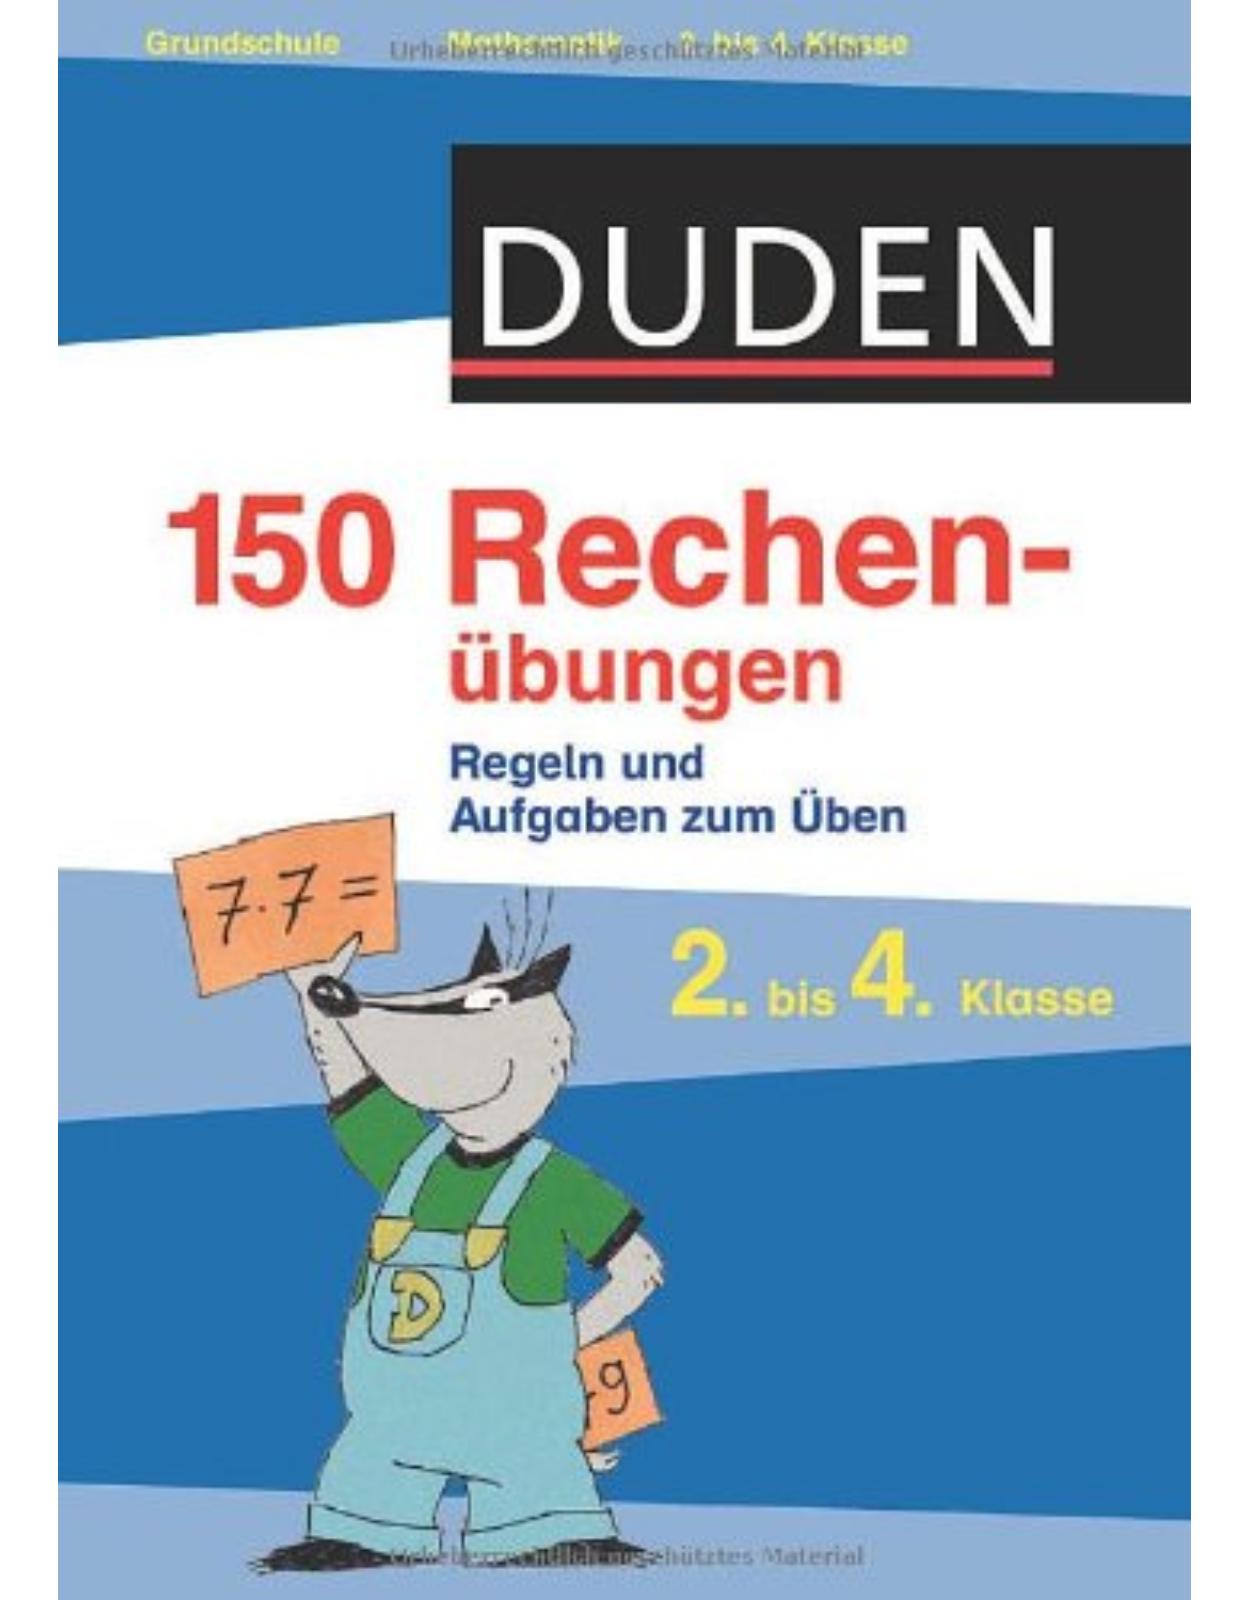 Duden - 150 Rechenubungen, 2. bis 4. Klasse